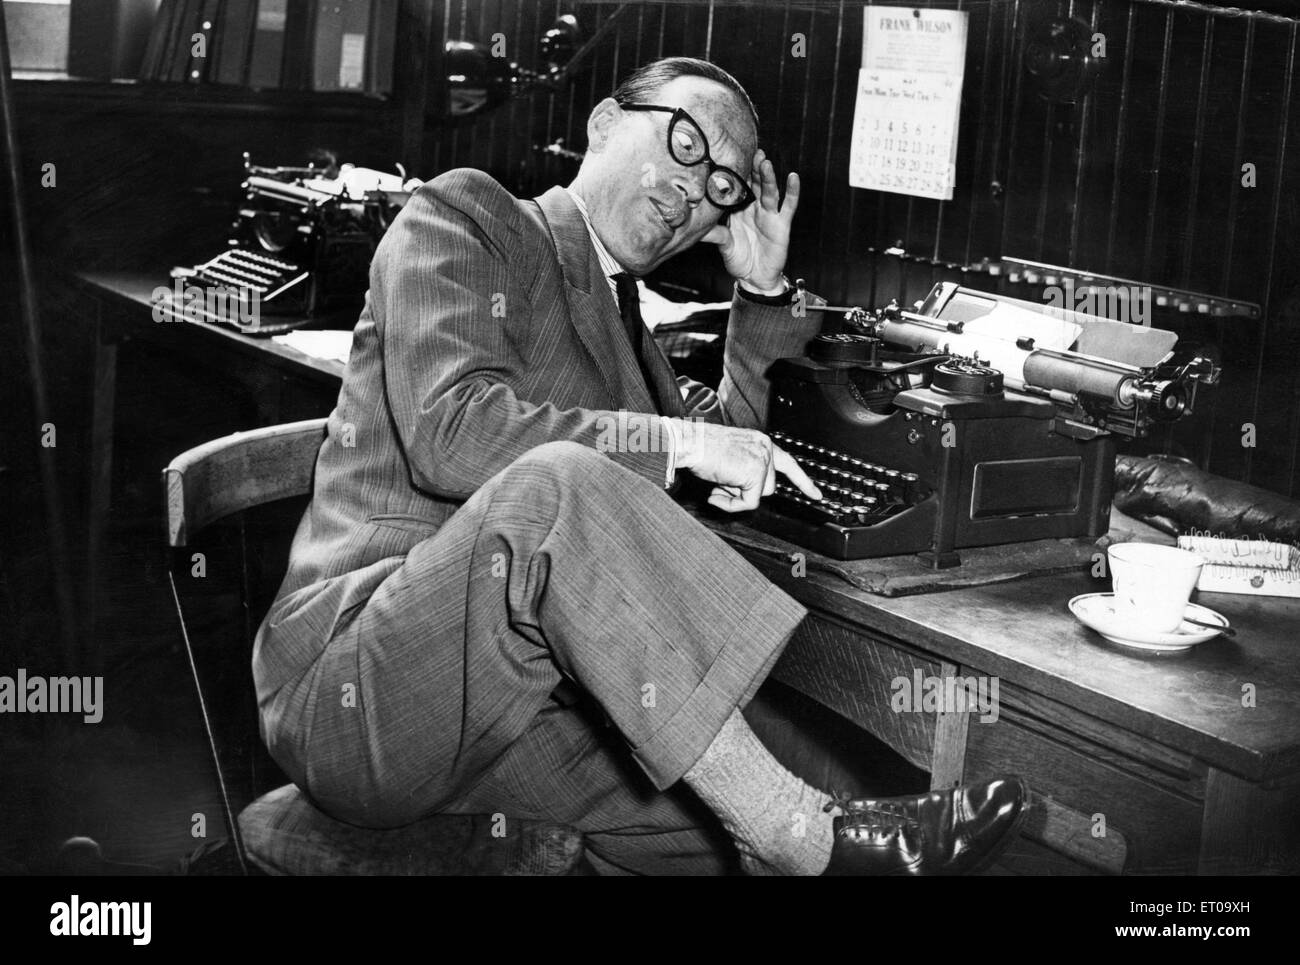 Arthur Askey CBE (6 juin 1900 - 16 novembre 1982), humoriste et acteur. Photo de son ancien bureau, où il travailla comme commis pour Liverpool Corporation, Département de l'éducation, 28 mai 1948. Banque D'Images